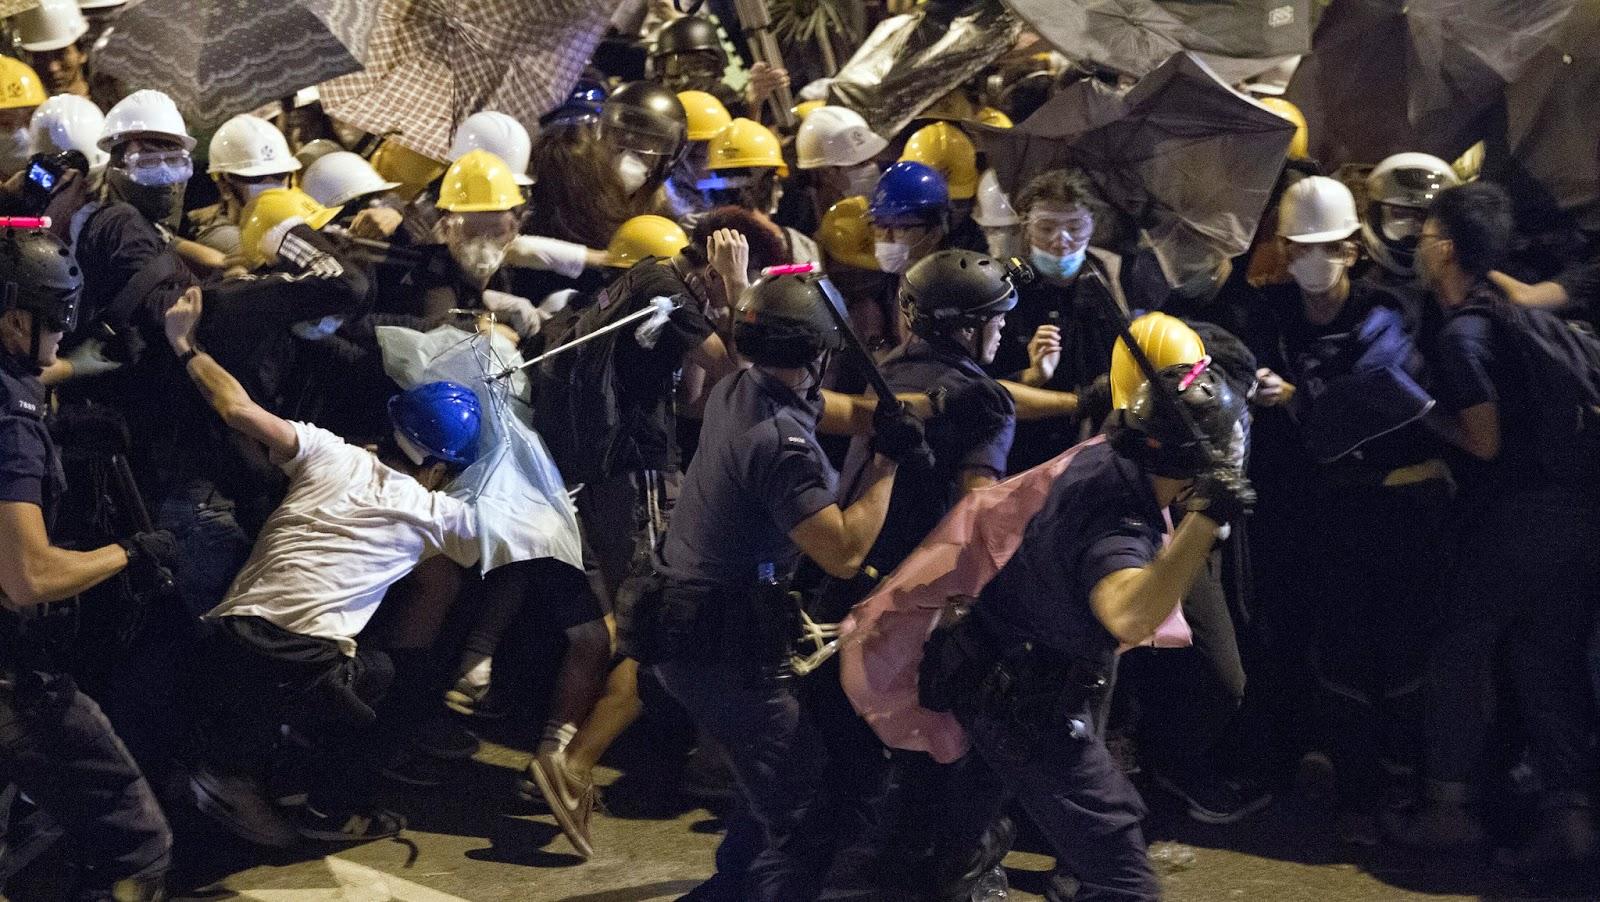 MONDE > La Police Hongkongaise envahit le campement prodémocratie dans Admiralty